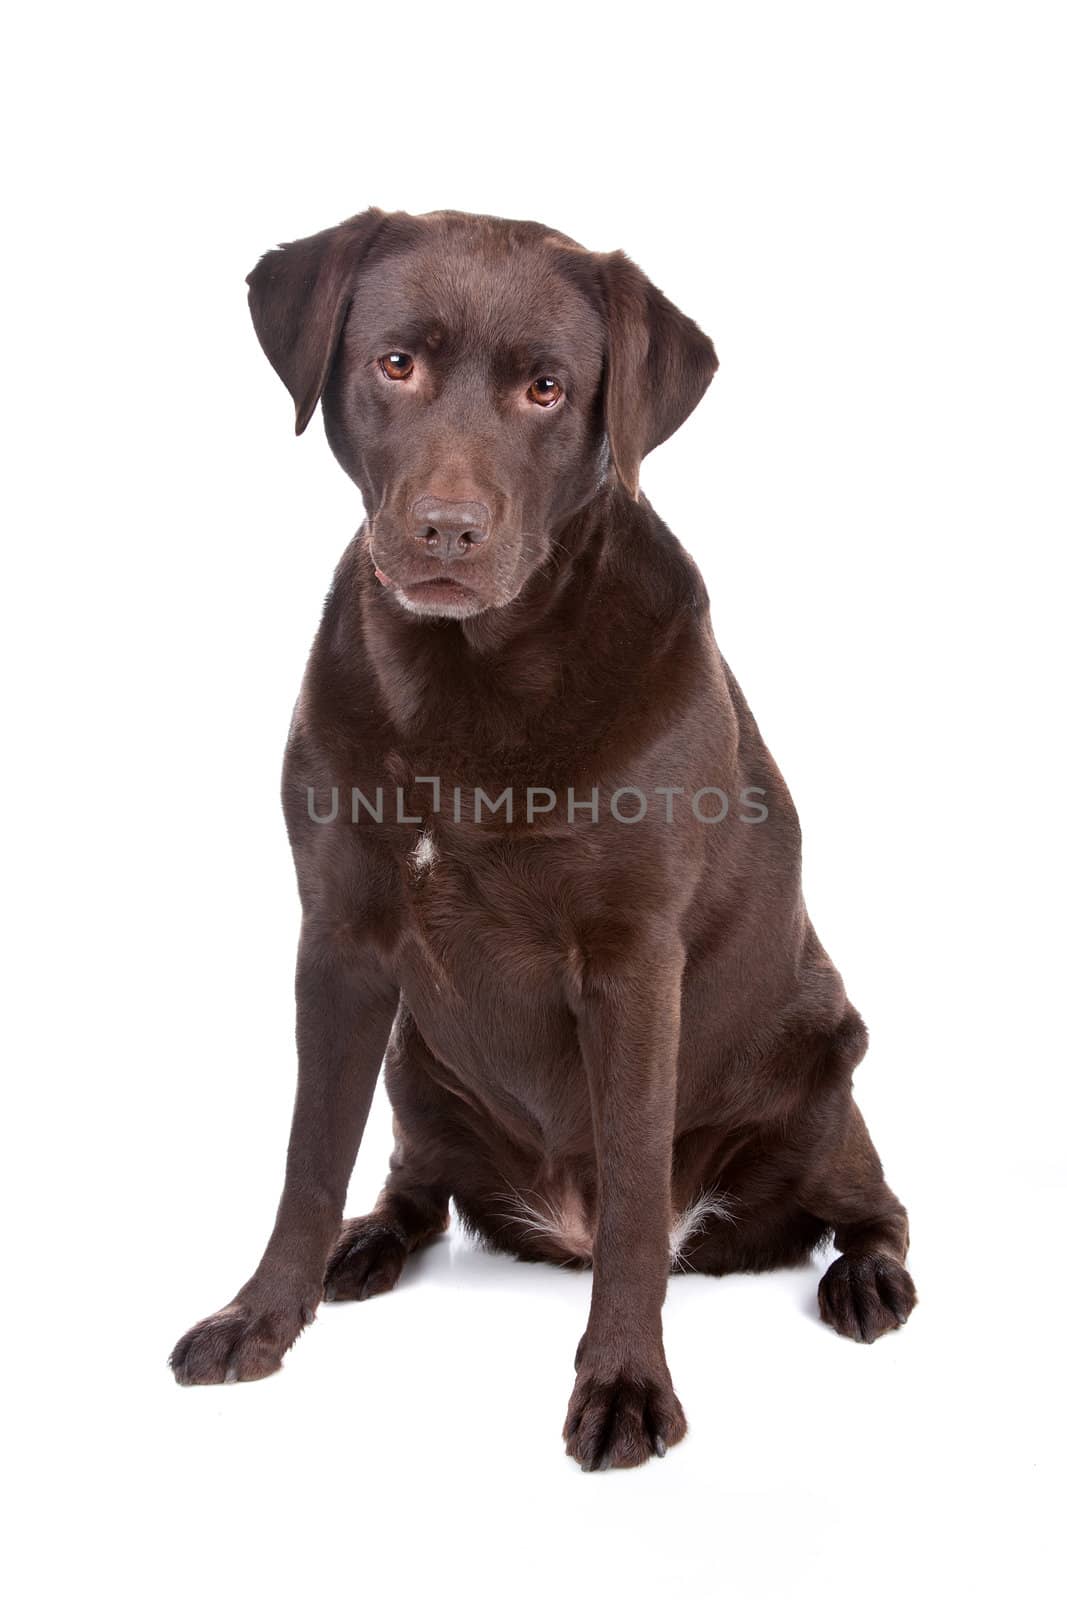 Chocolate Labrador retriever dog by eriklam